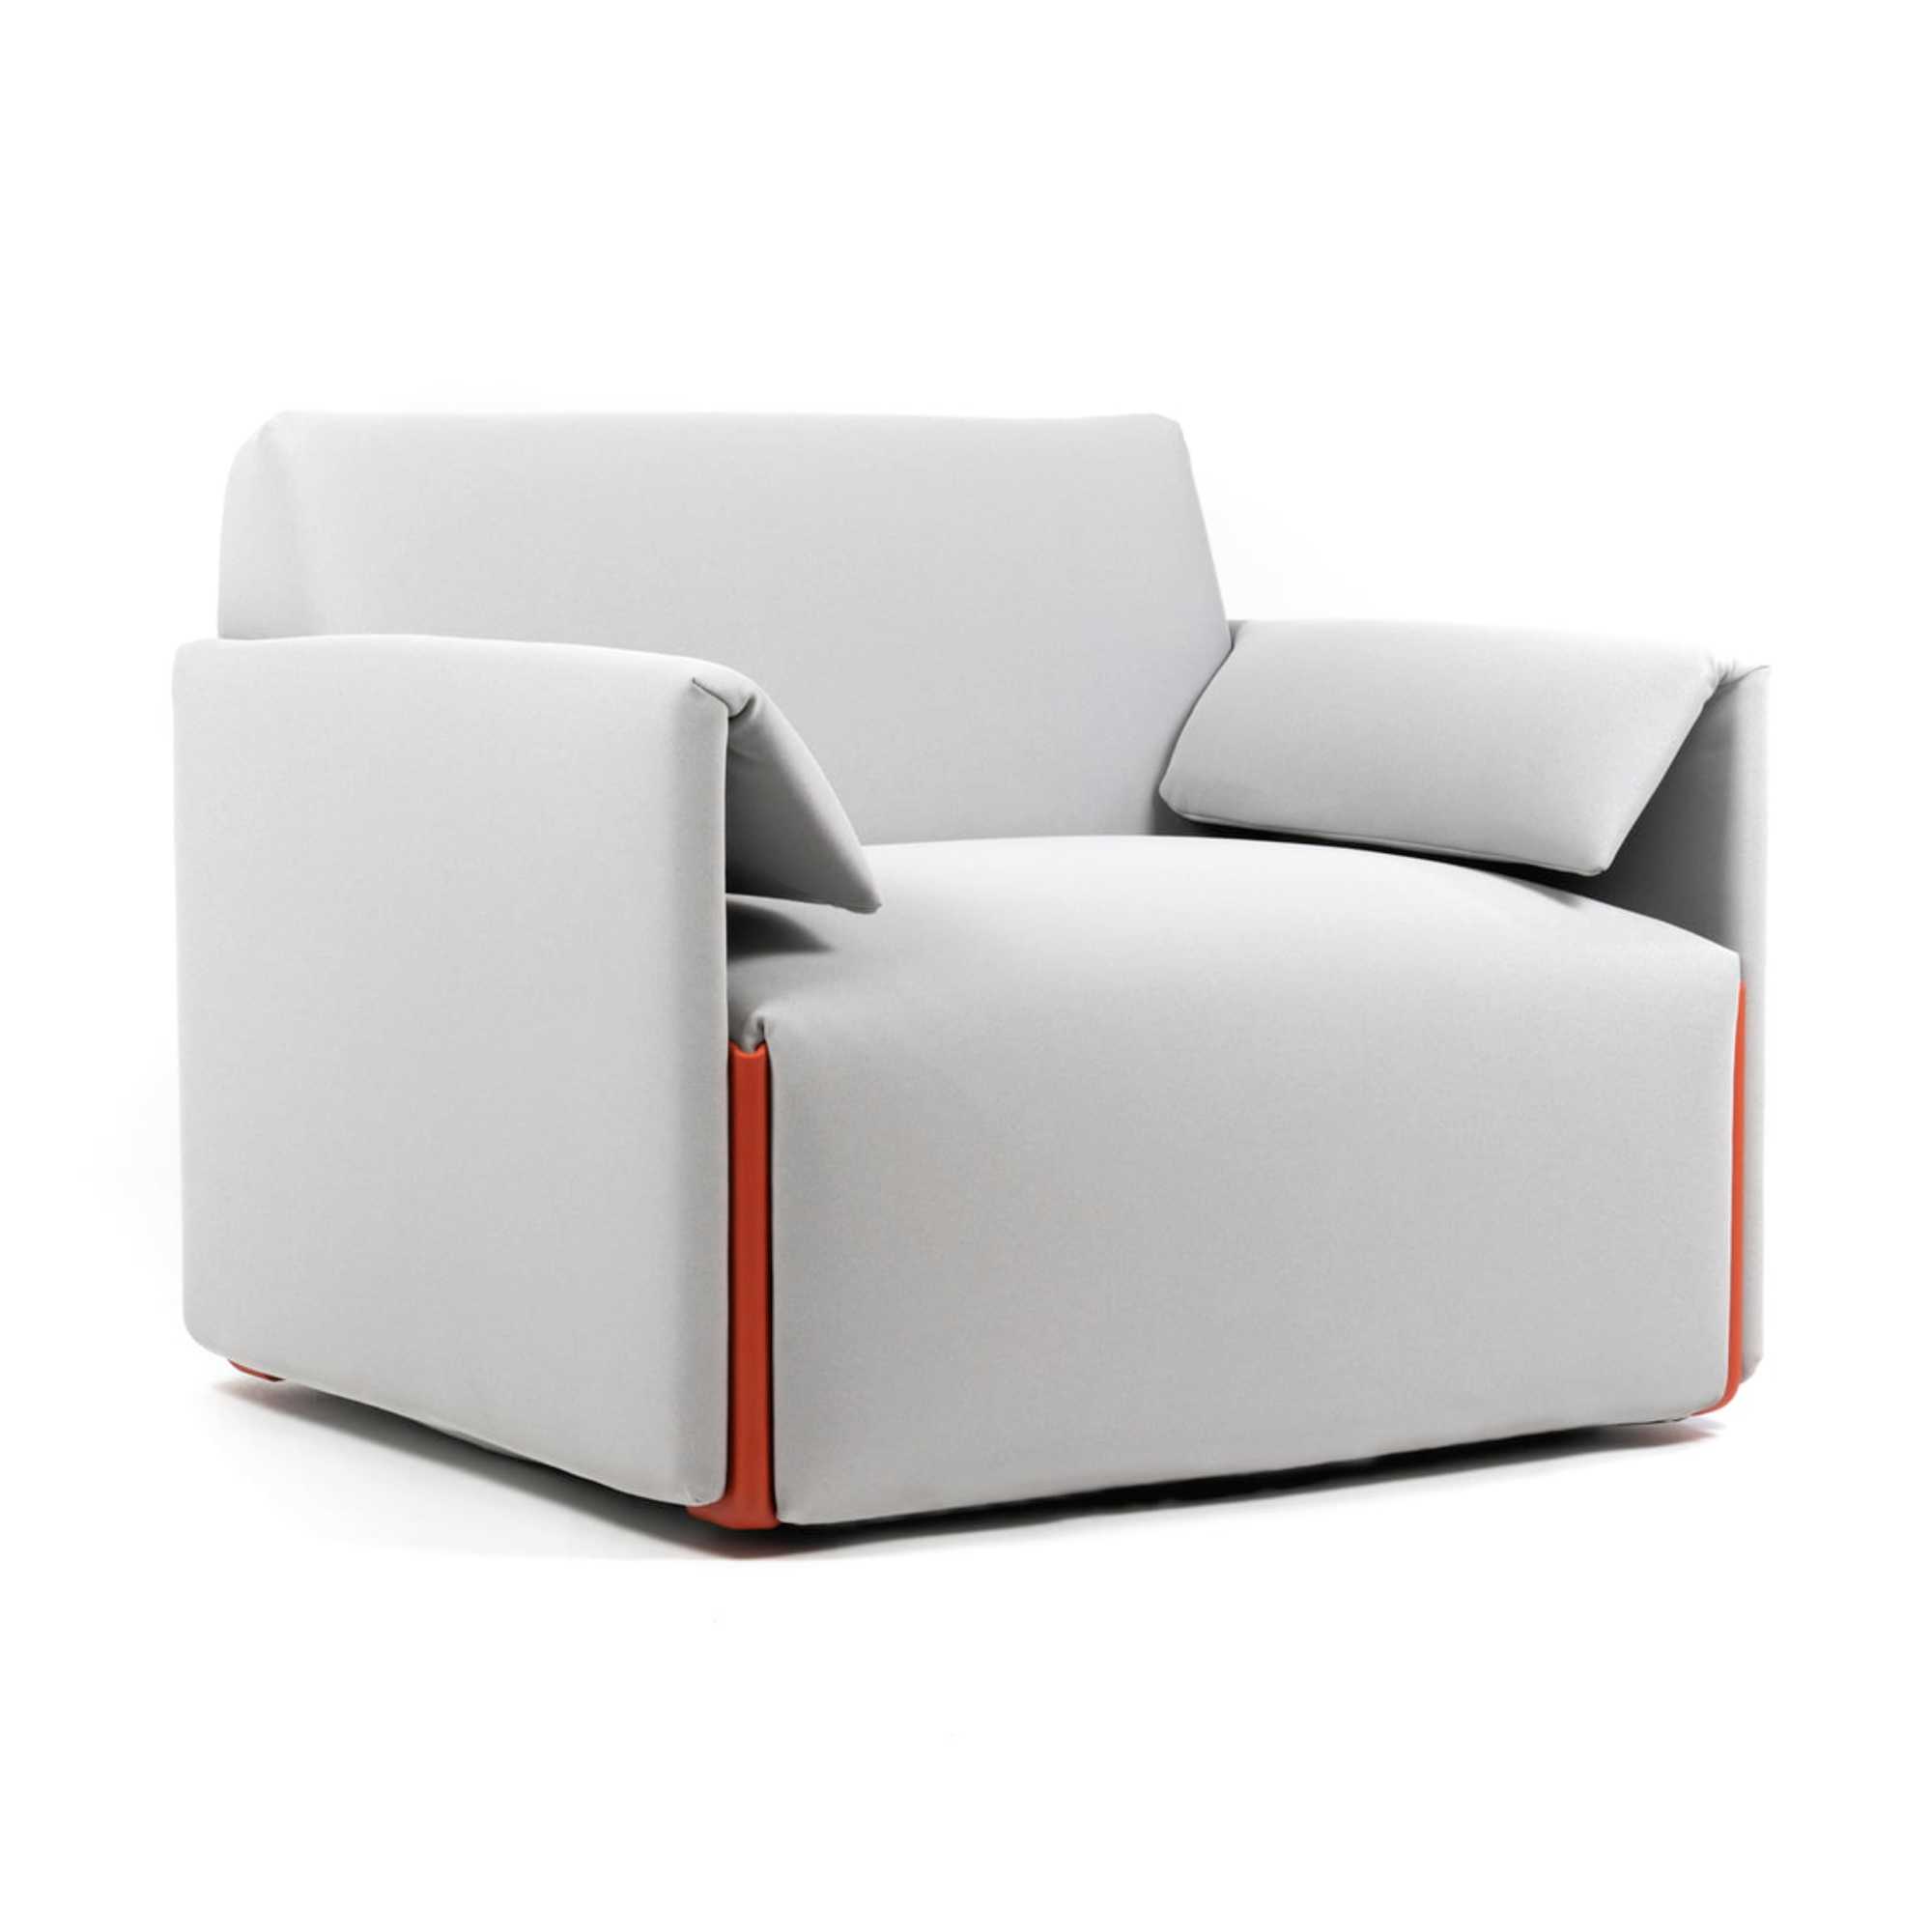 Magis Costume armchair, fidivi one 8504/orange 1110c